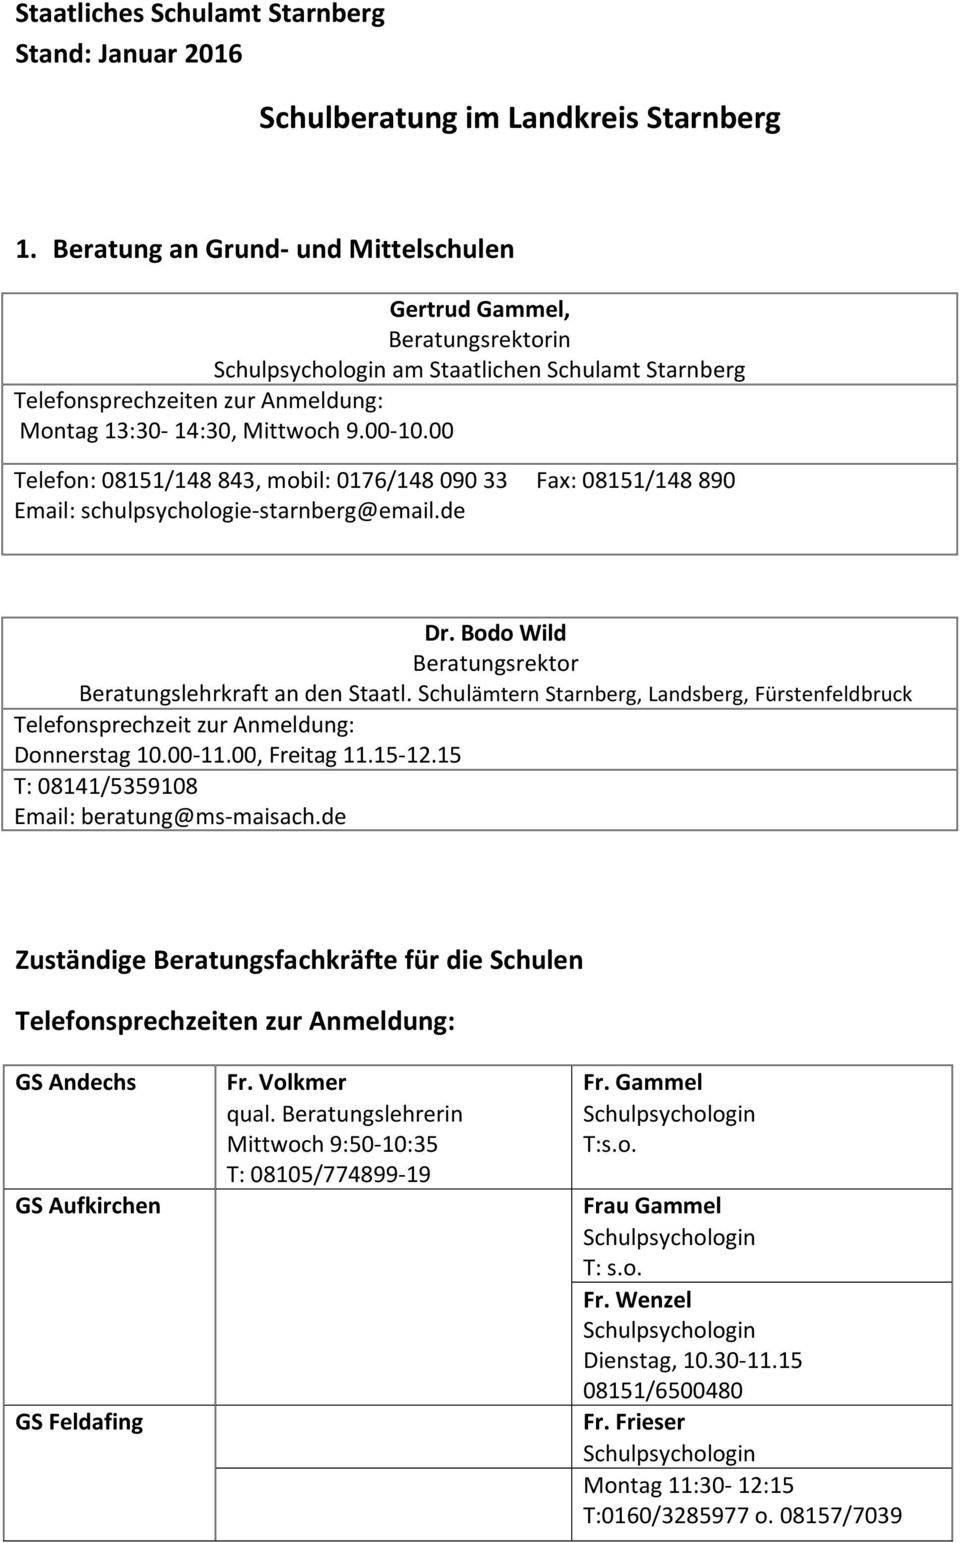 Schulämtern Starnberg, Landsberg, Fürstenfeldbruck Telefonsprechzeit zur Anmeldung: Donnerstag 10.00-11.00, Freitag 11.15-12.15 T: 08141/5359108 Email: beratung@ms-maisach.